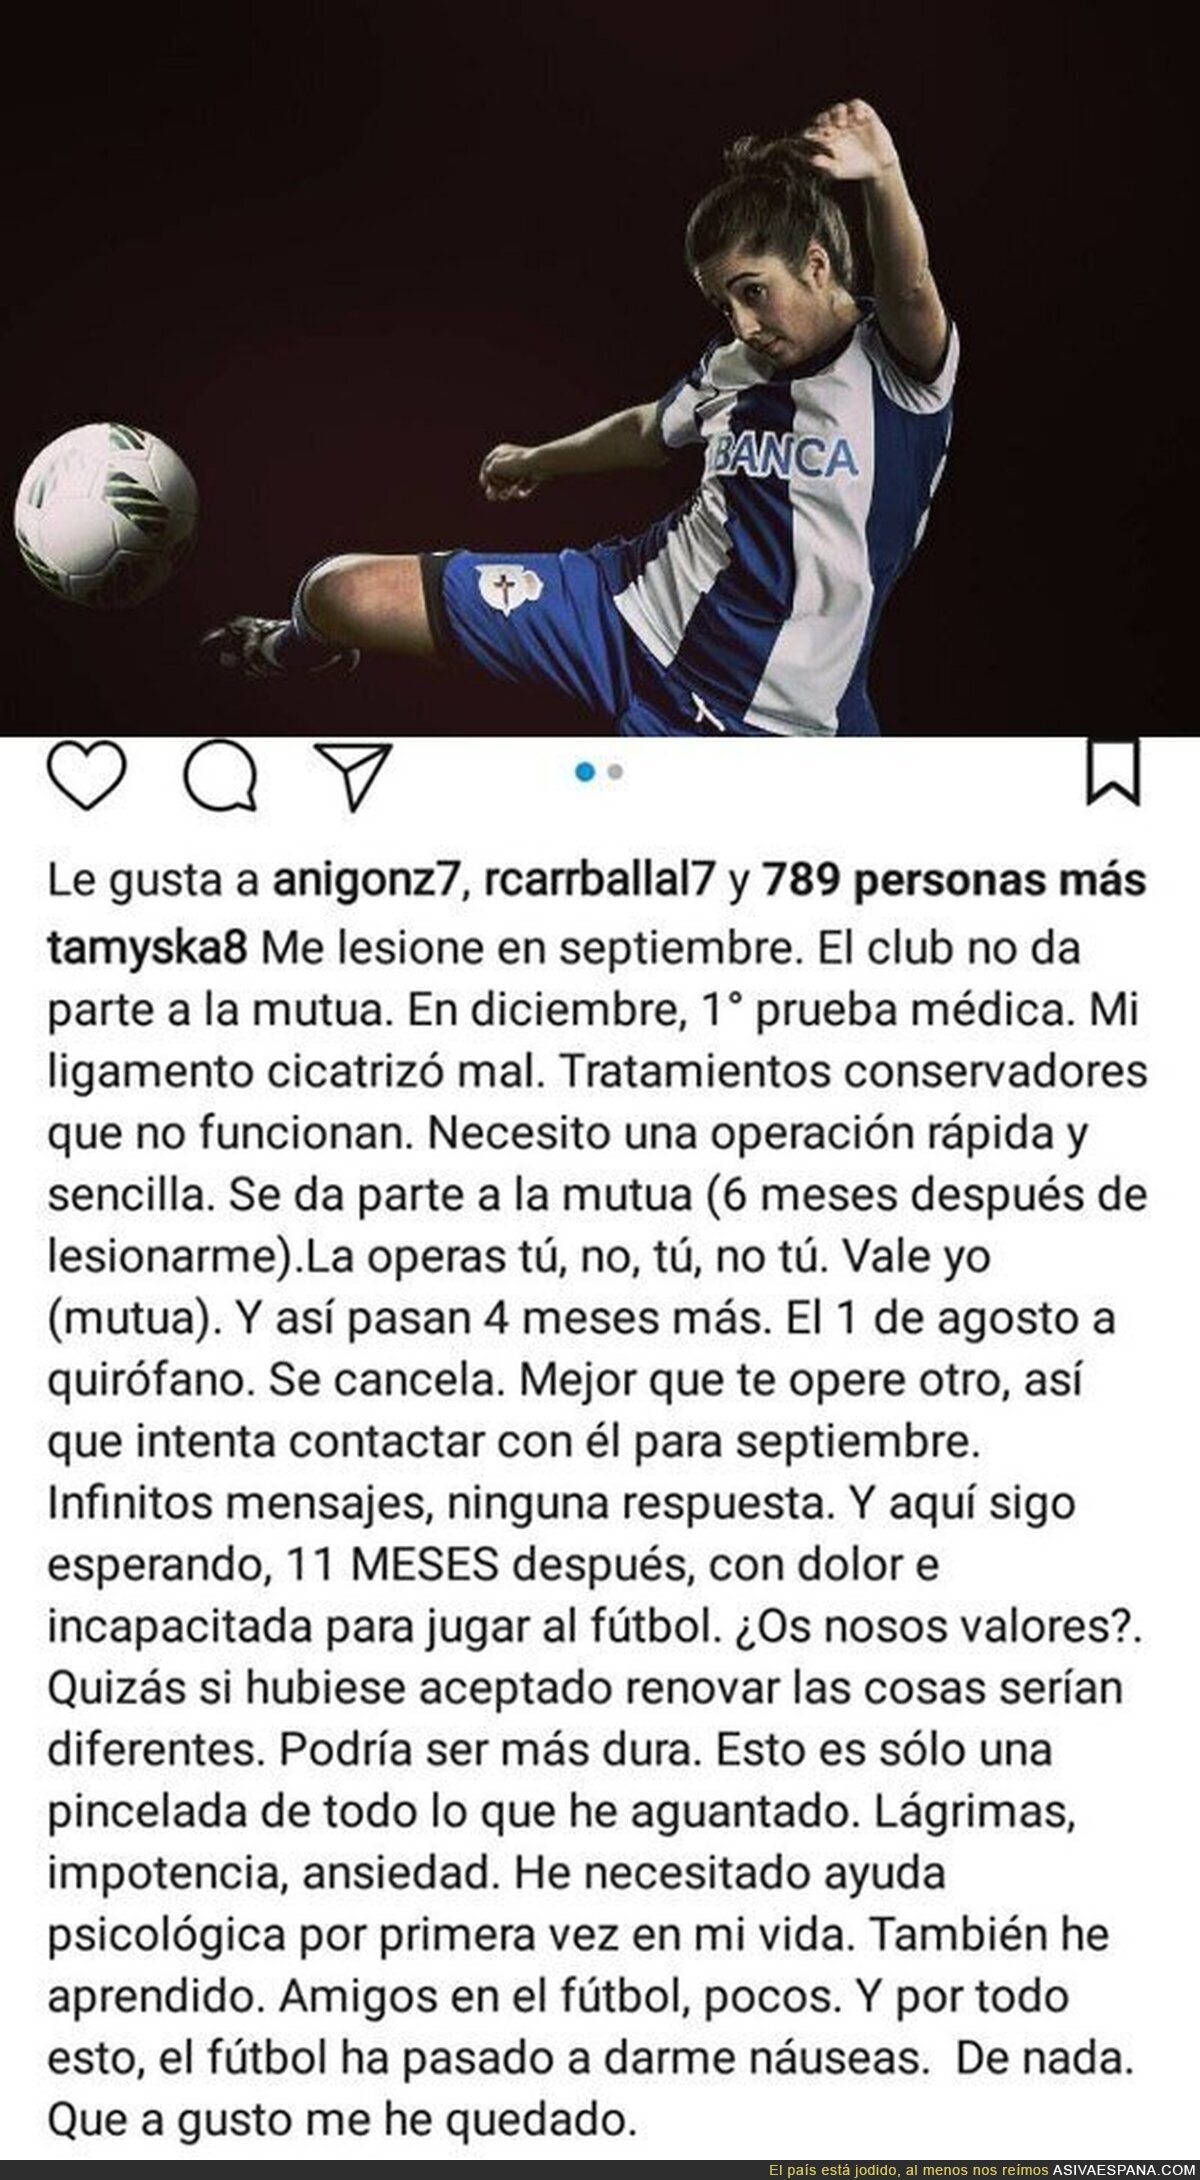 La difícil situación de la jugadora de fútbol del Deportivo de la Coruña